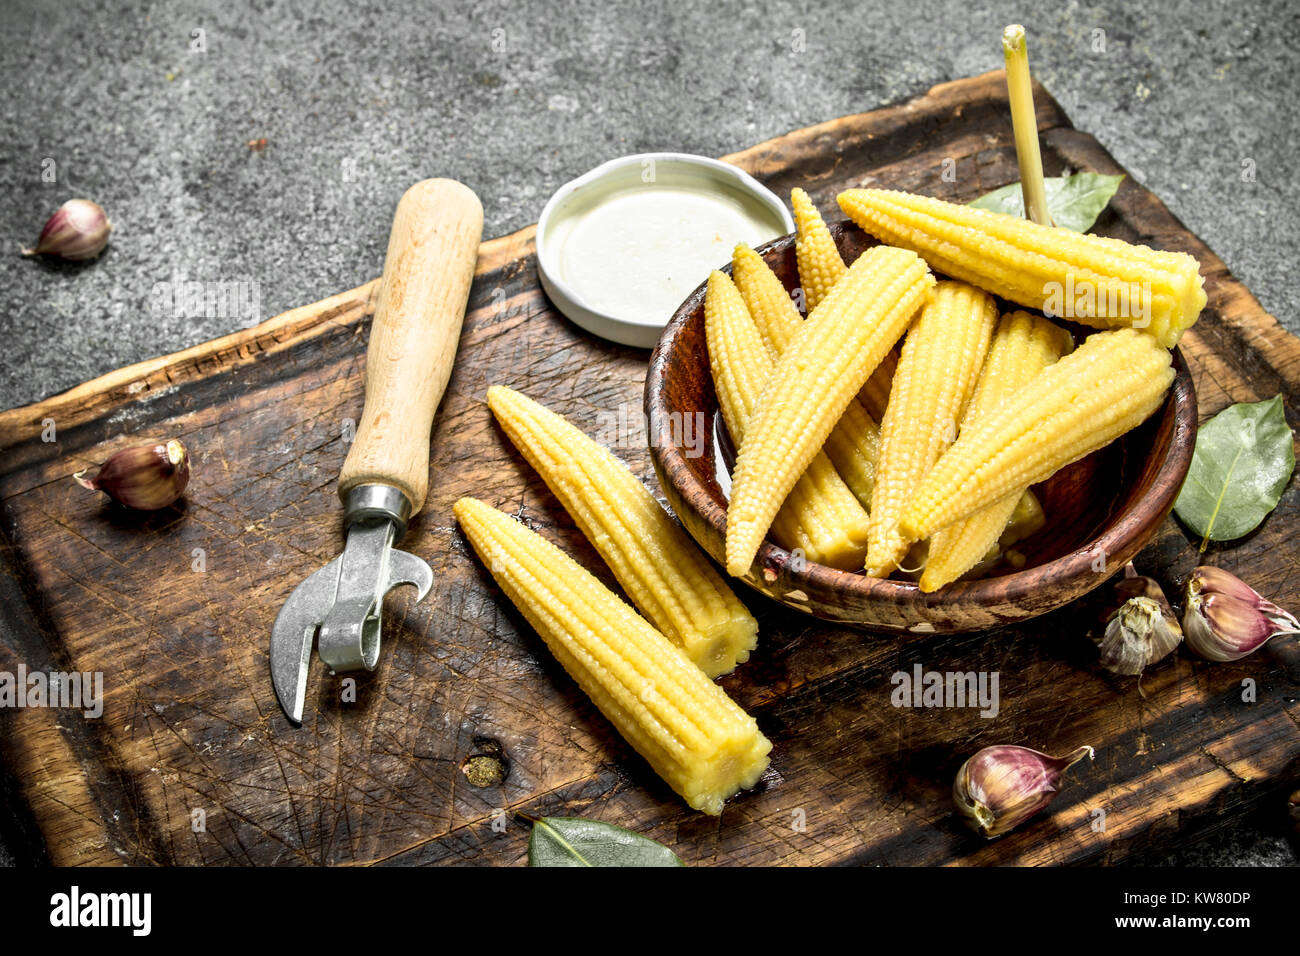 Encurtido de maíz en una jarra sobre una tabla para cortar. Sobre un fondo rústico. Foto de stock